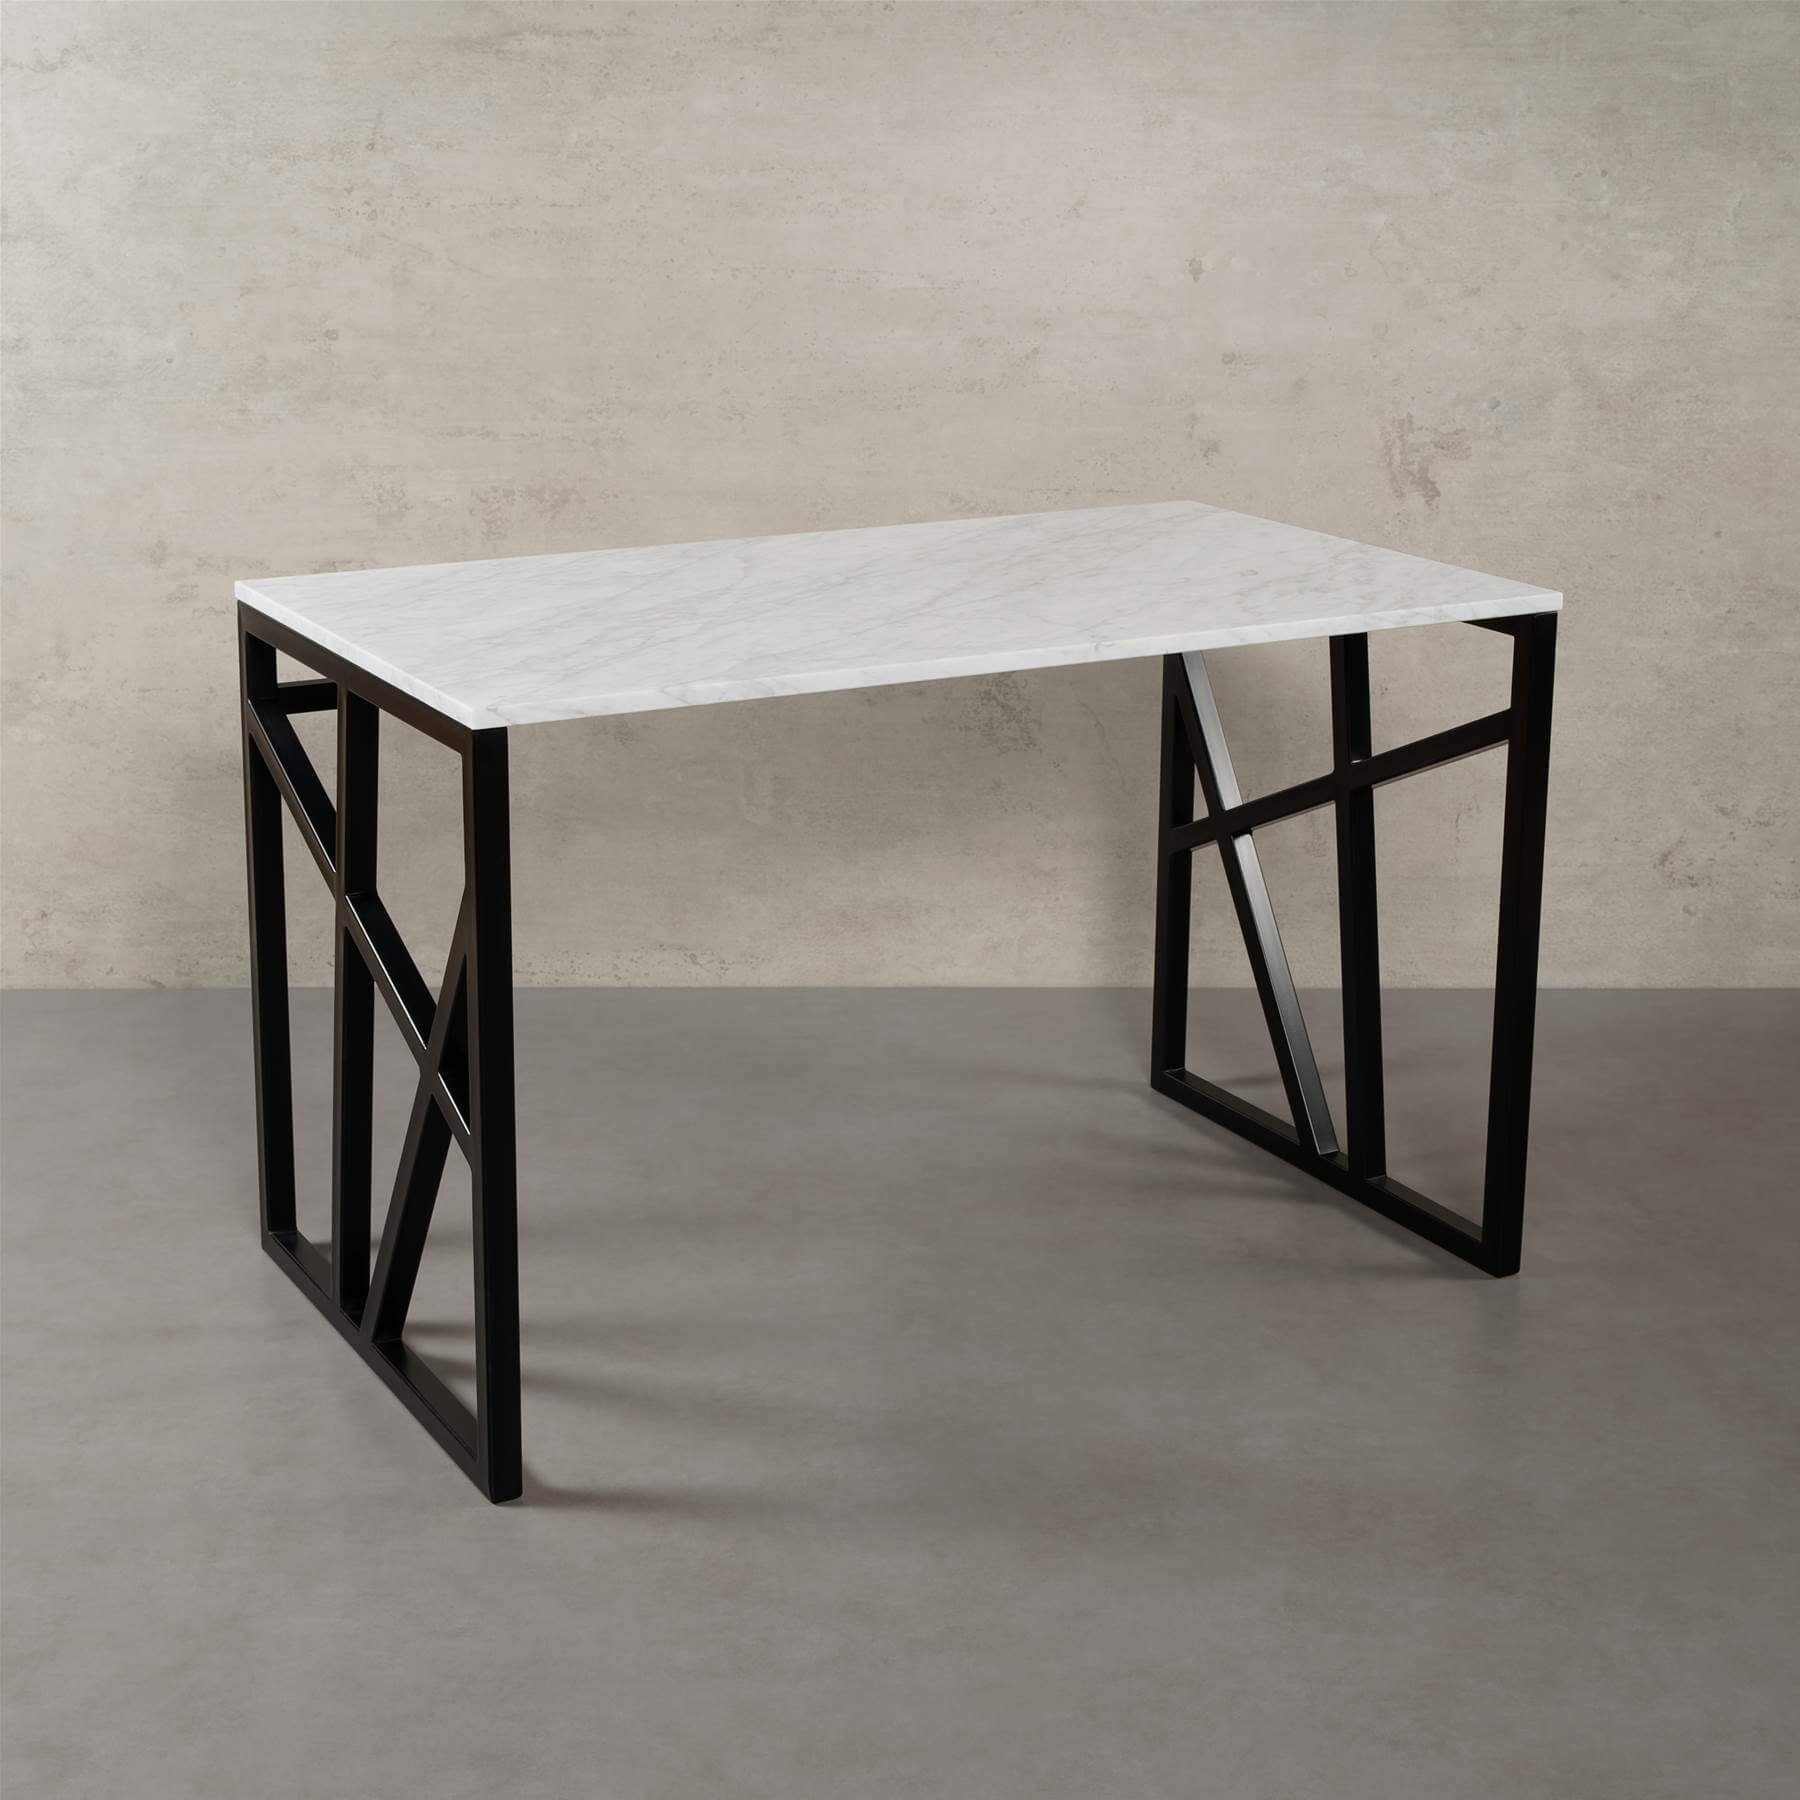 MAGNA Atelier Schreibtisch PITTSBURGH Schreibtisch mit ECHTEM MARMOR, Schreibtisch eckig, schwarz Metallgestell, 110cmx66cmx75cm Bianco Carrara